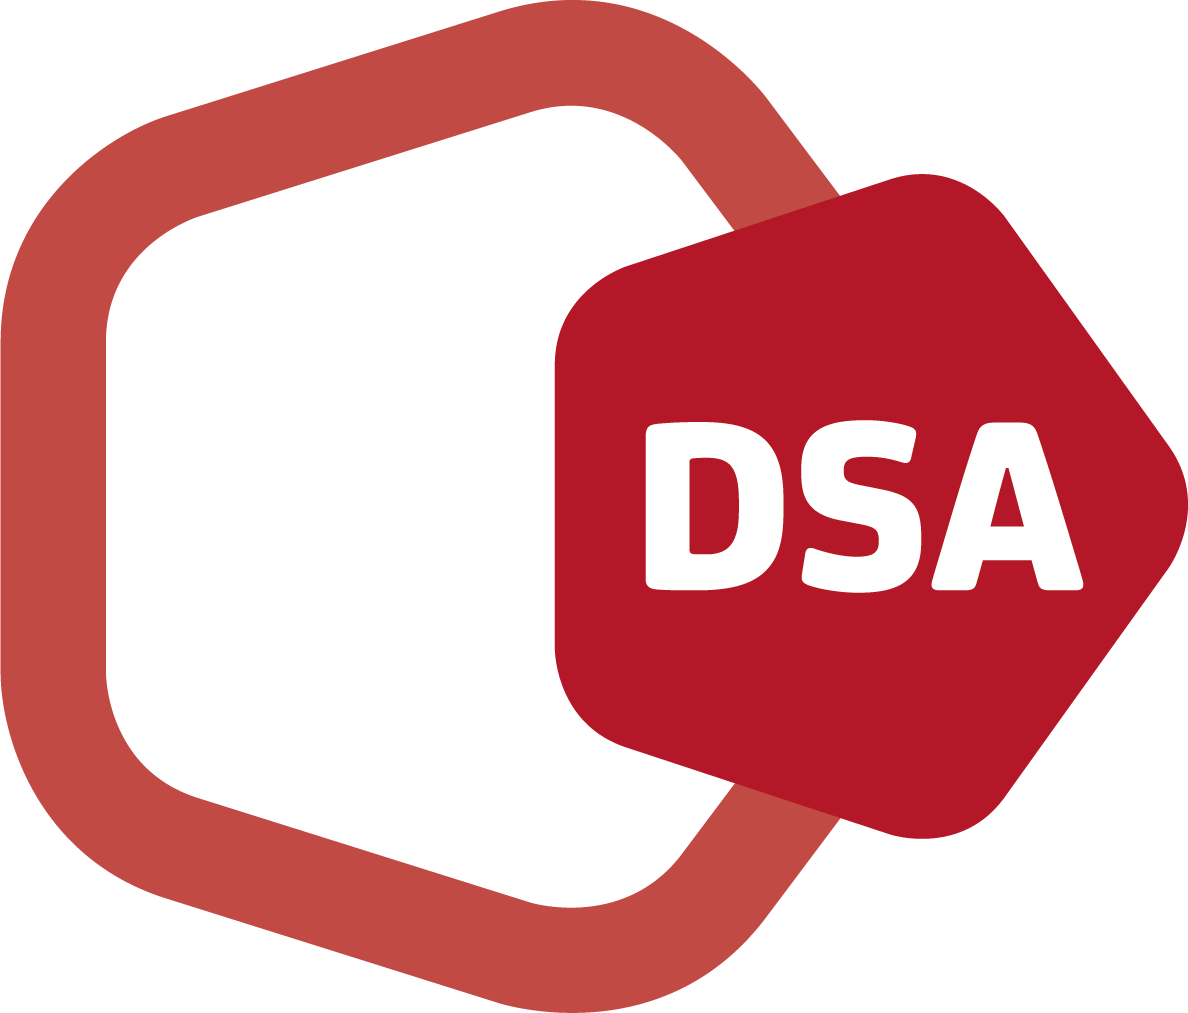 Cla Dsa Icon - Stop Sign (1188x1013)